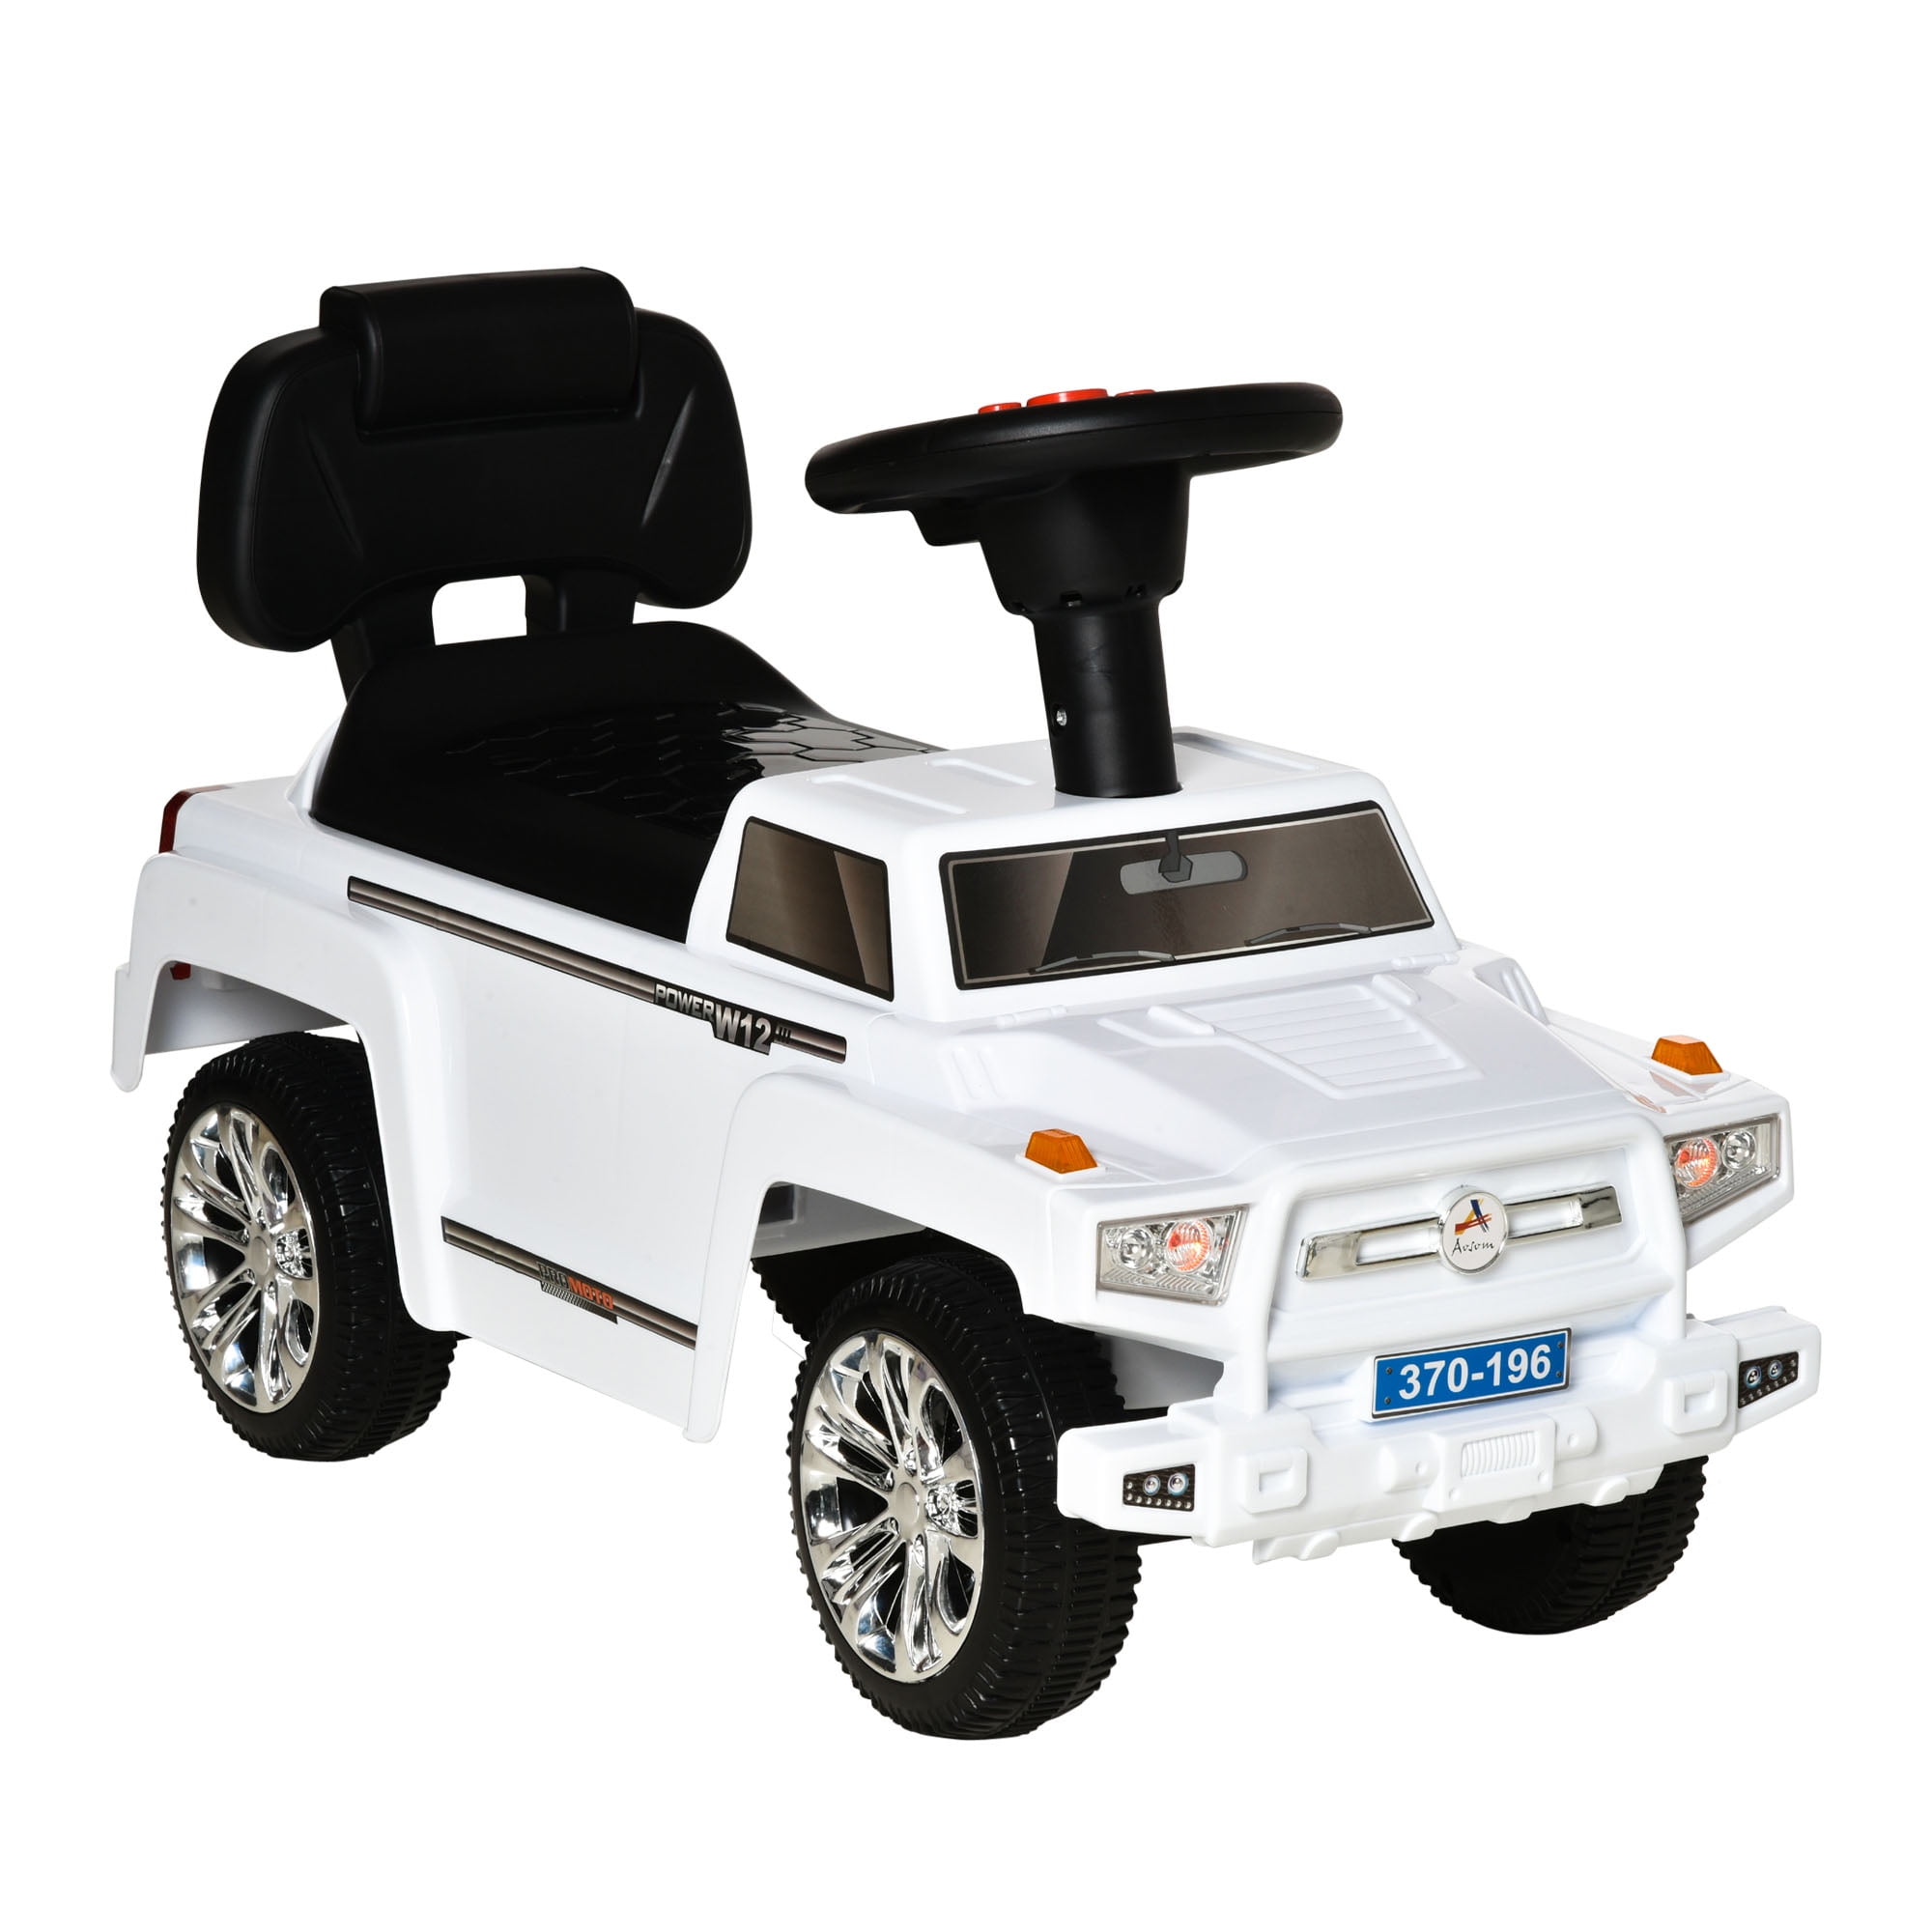 Slip Car Ride On Kids Car rutschfahrzeu Car with Horn Baby Walking Car